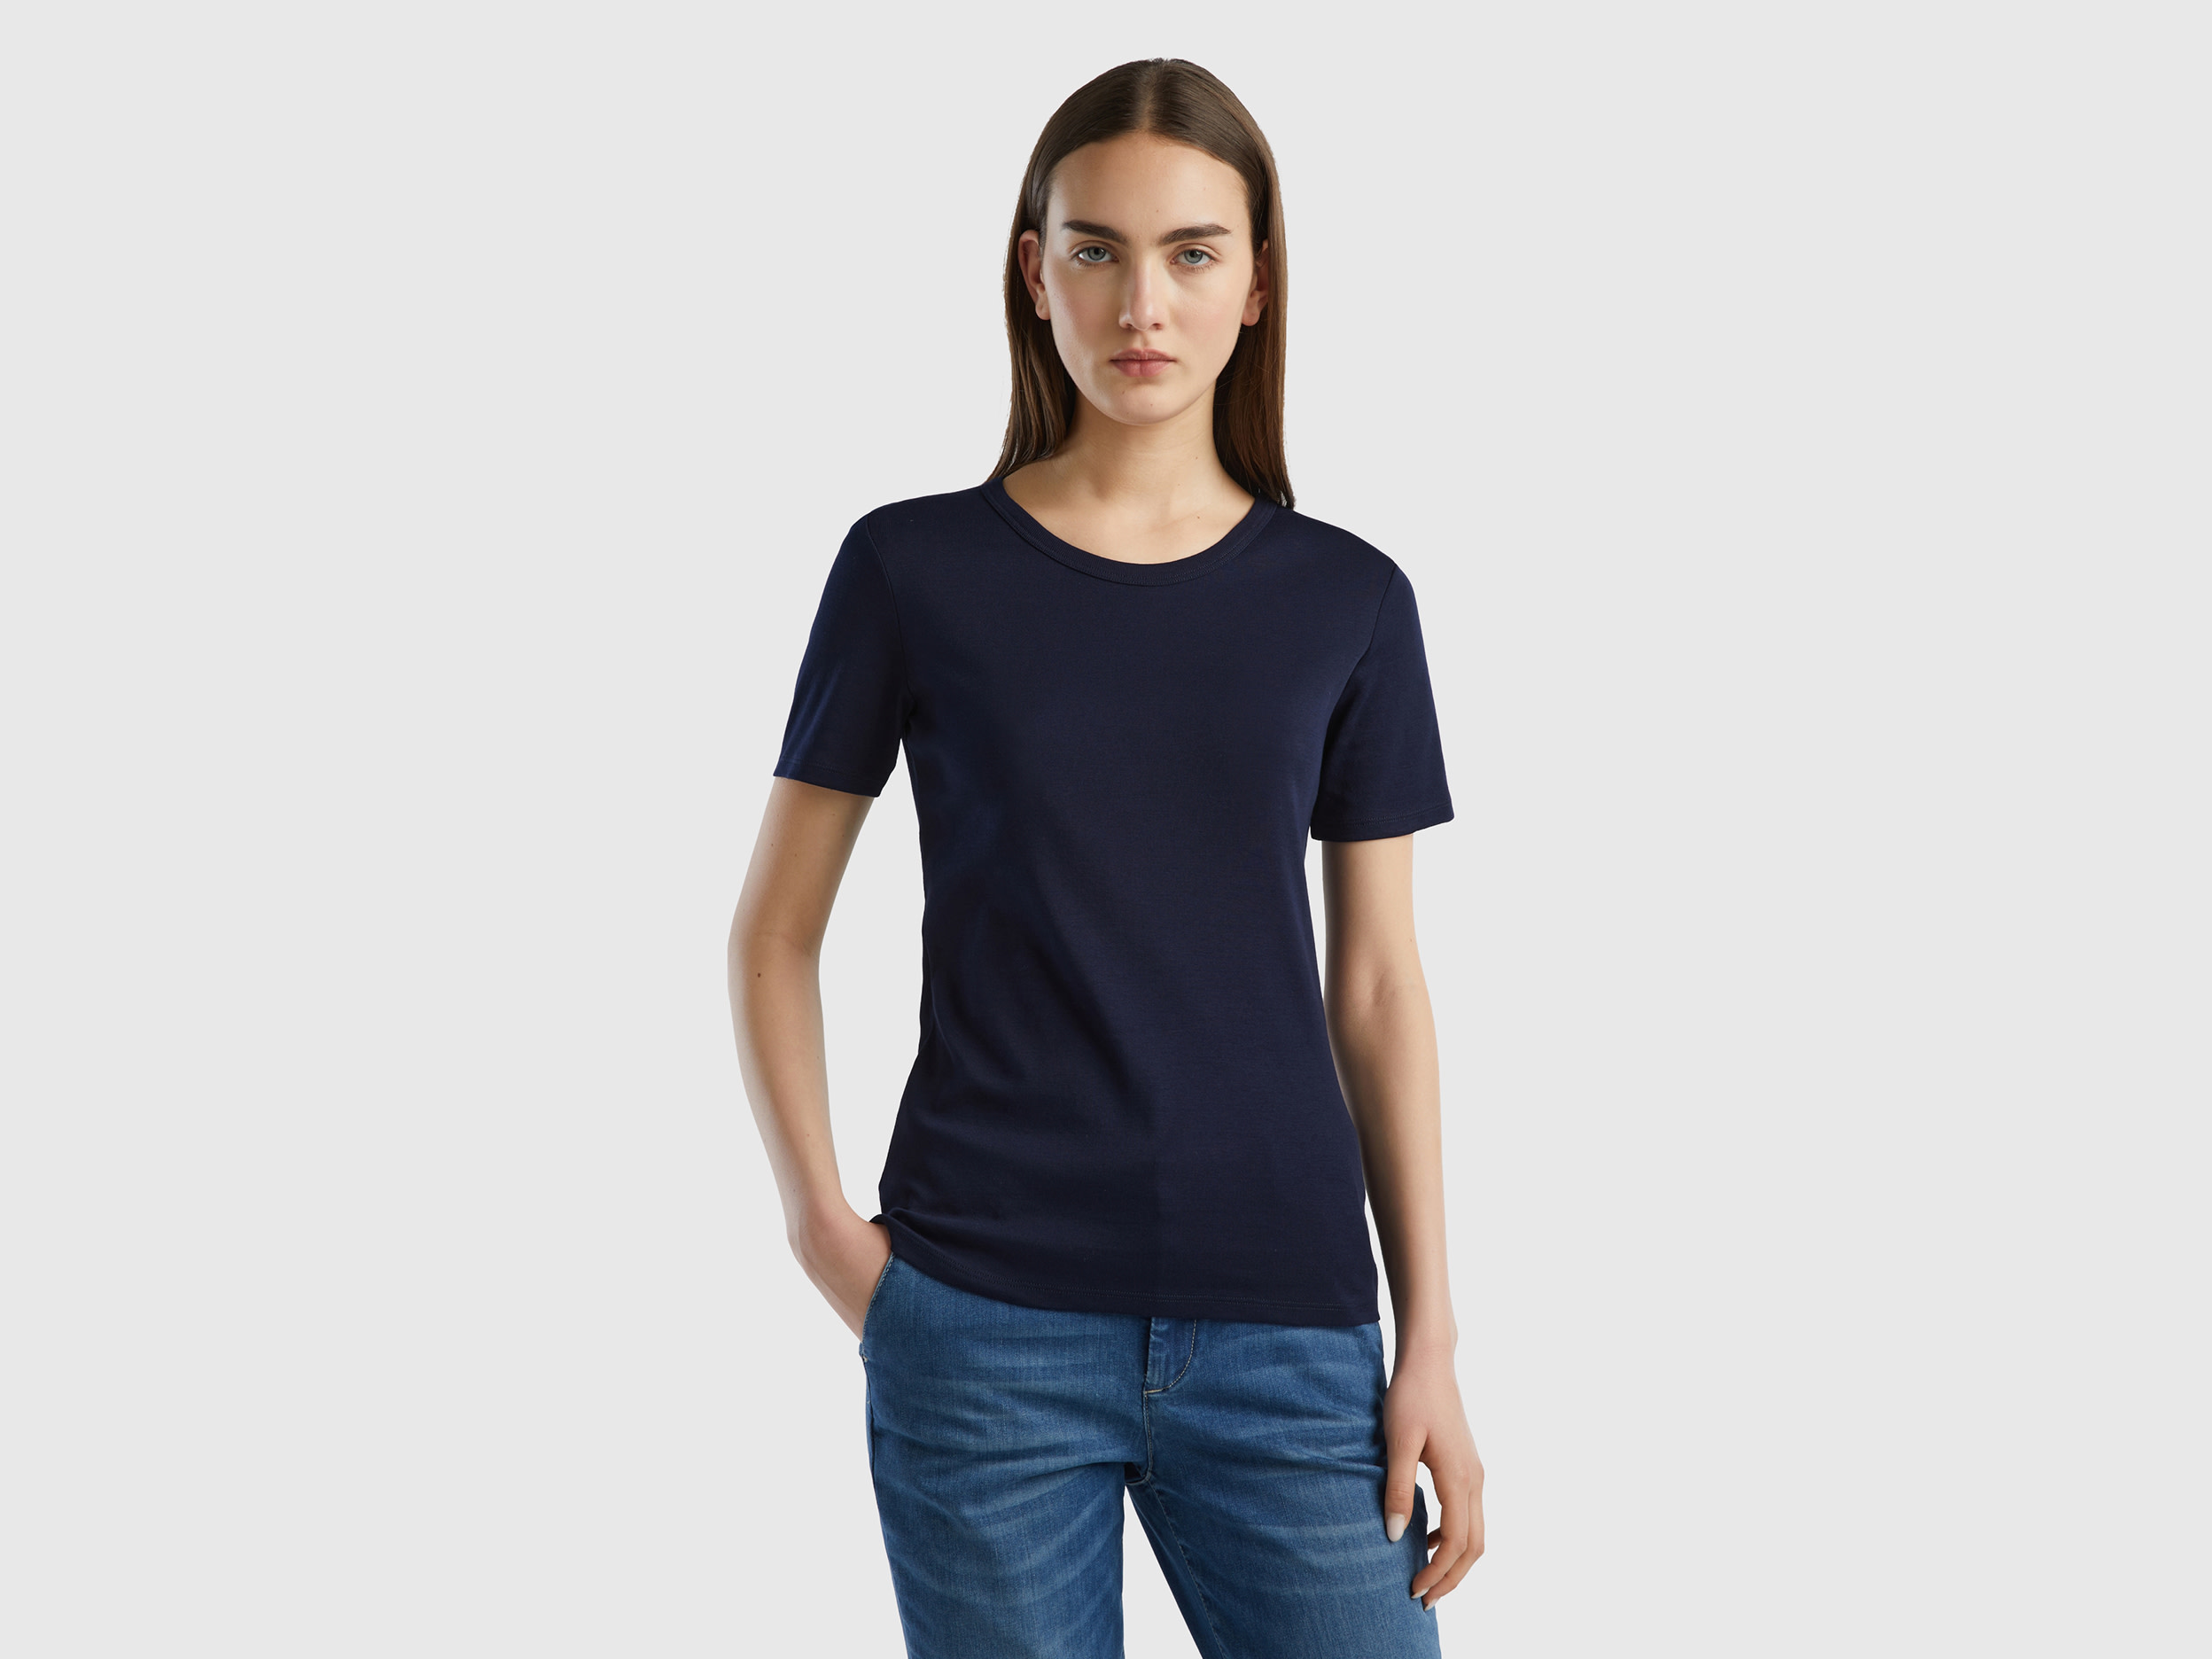 Benetton, Long Fiber Cotton T-shirt, size XXS, Dark Blue, Women